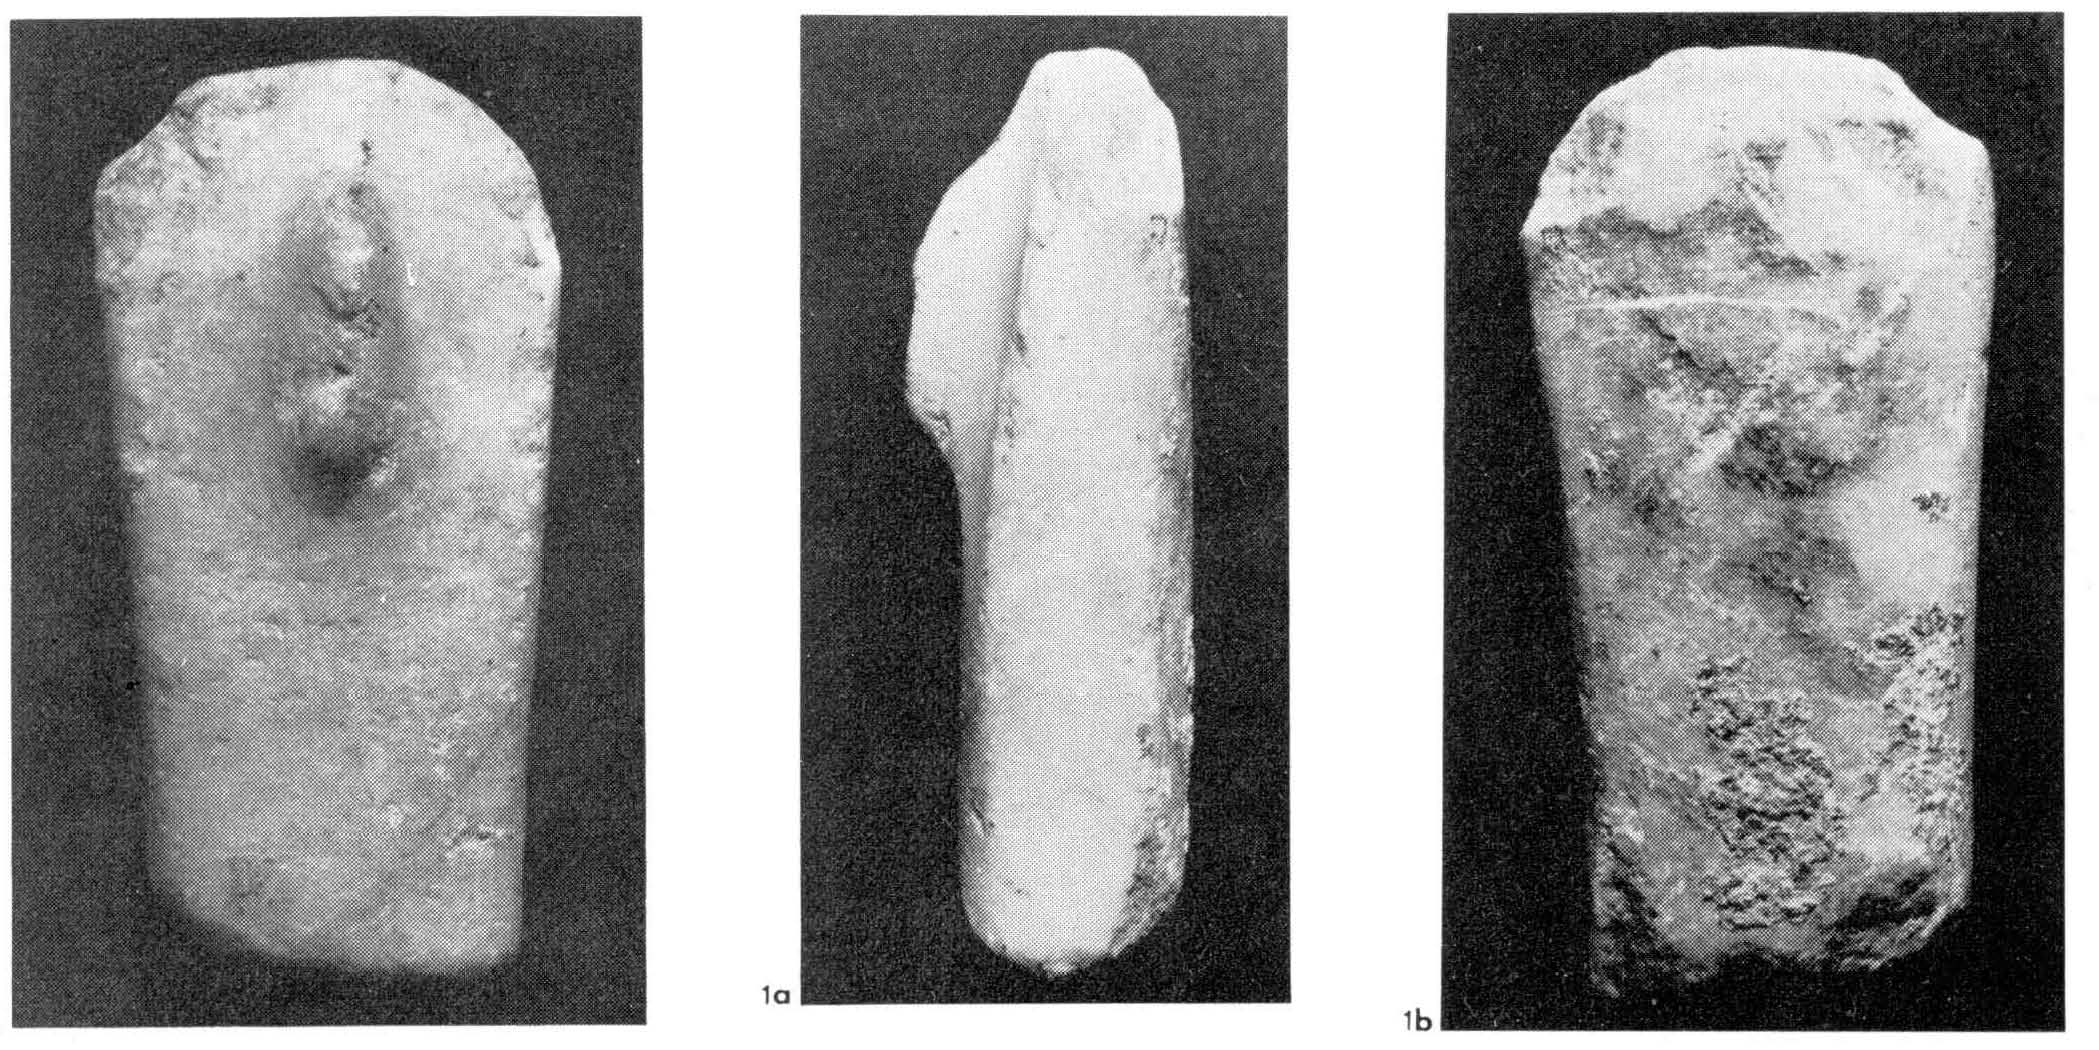 materiale di collezione museale (materiale lapideo) (Neolitico recente)